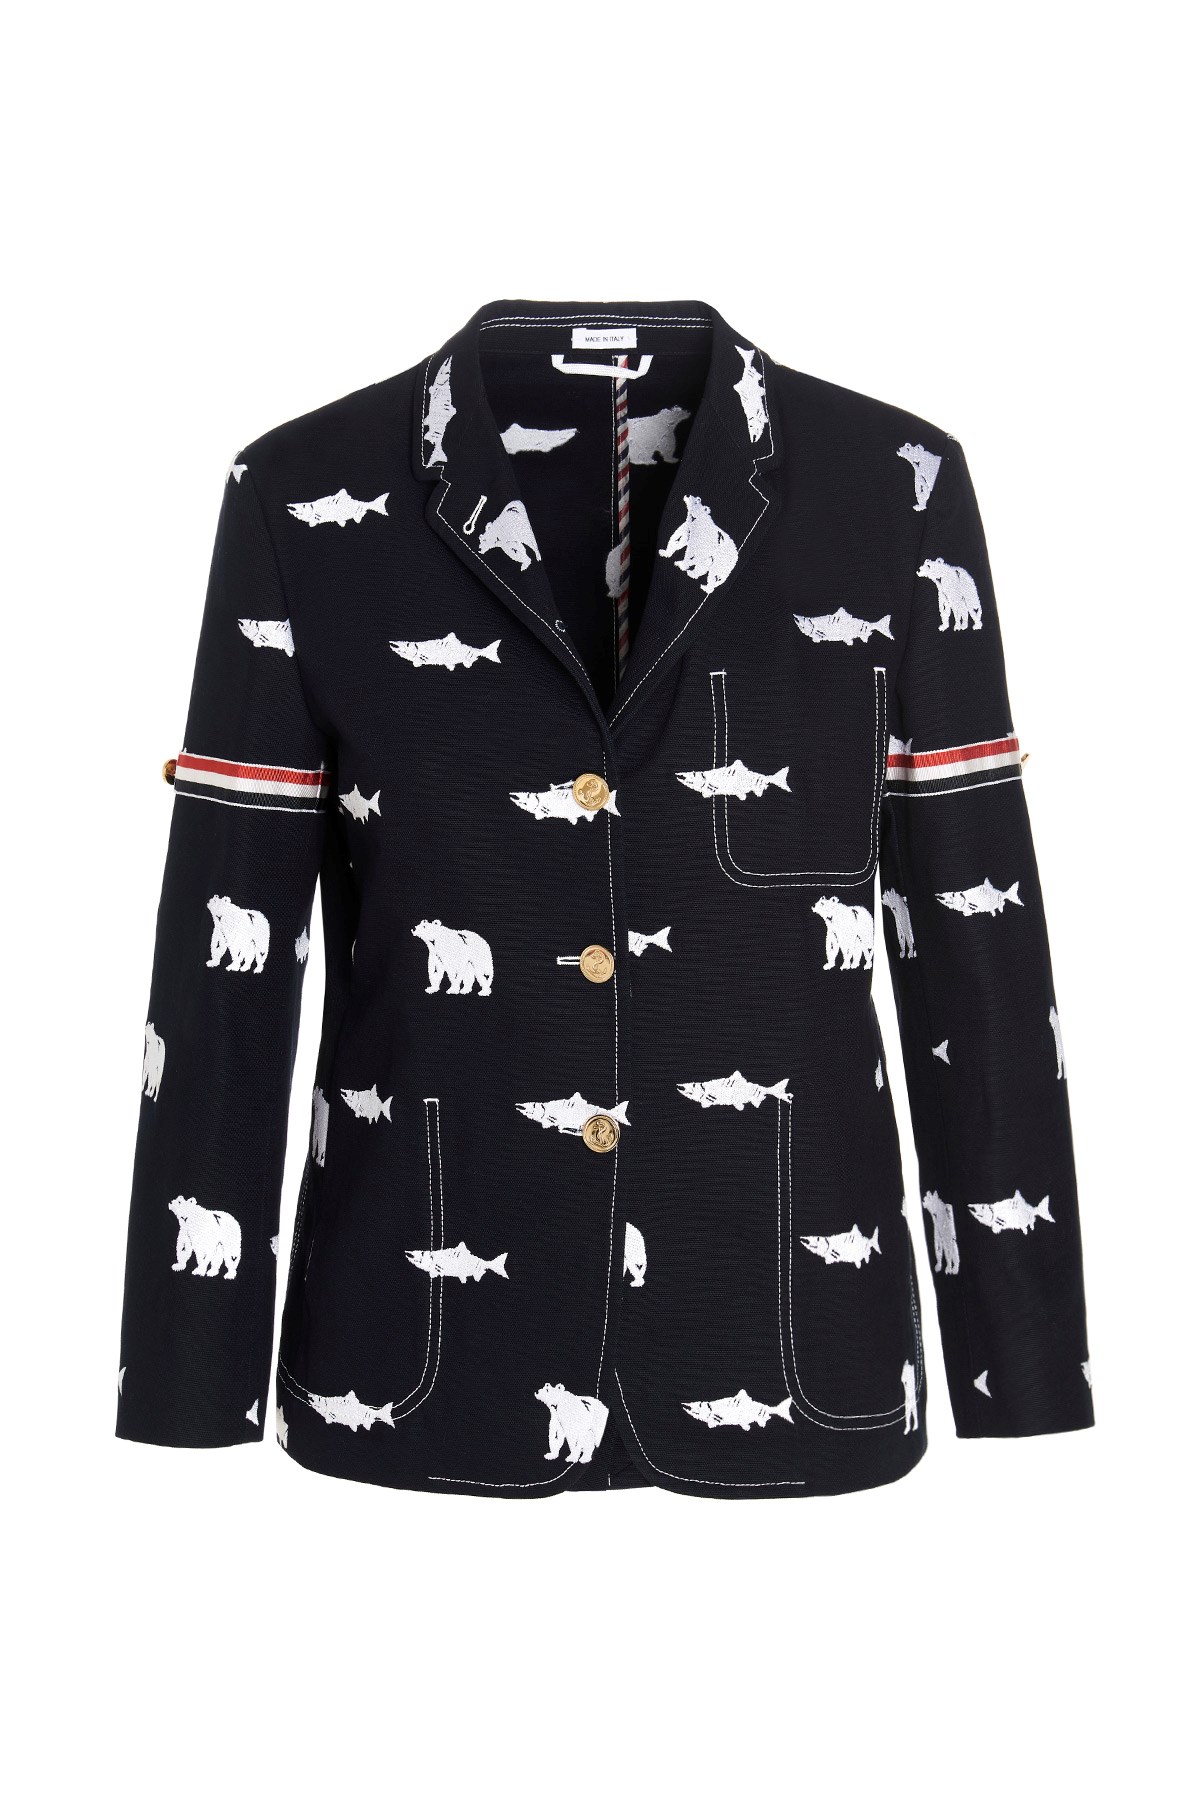 THOM BROWNE 'Bear And Salmon’ Blazer Jacket